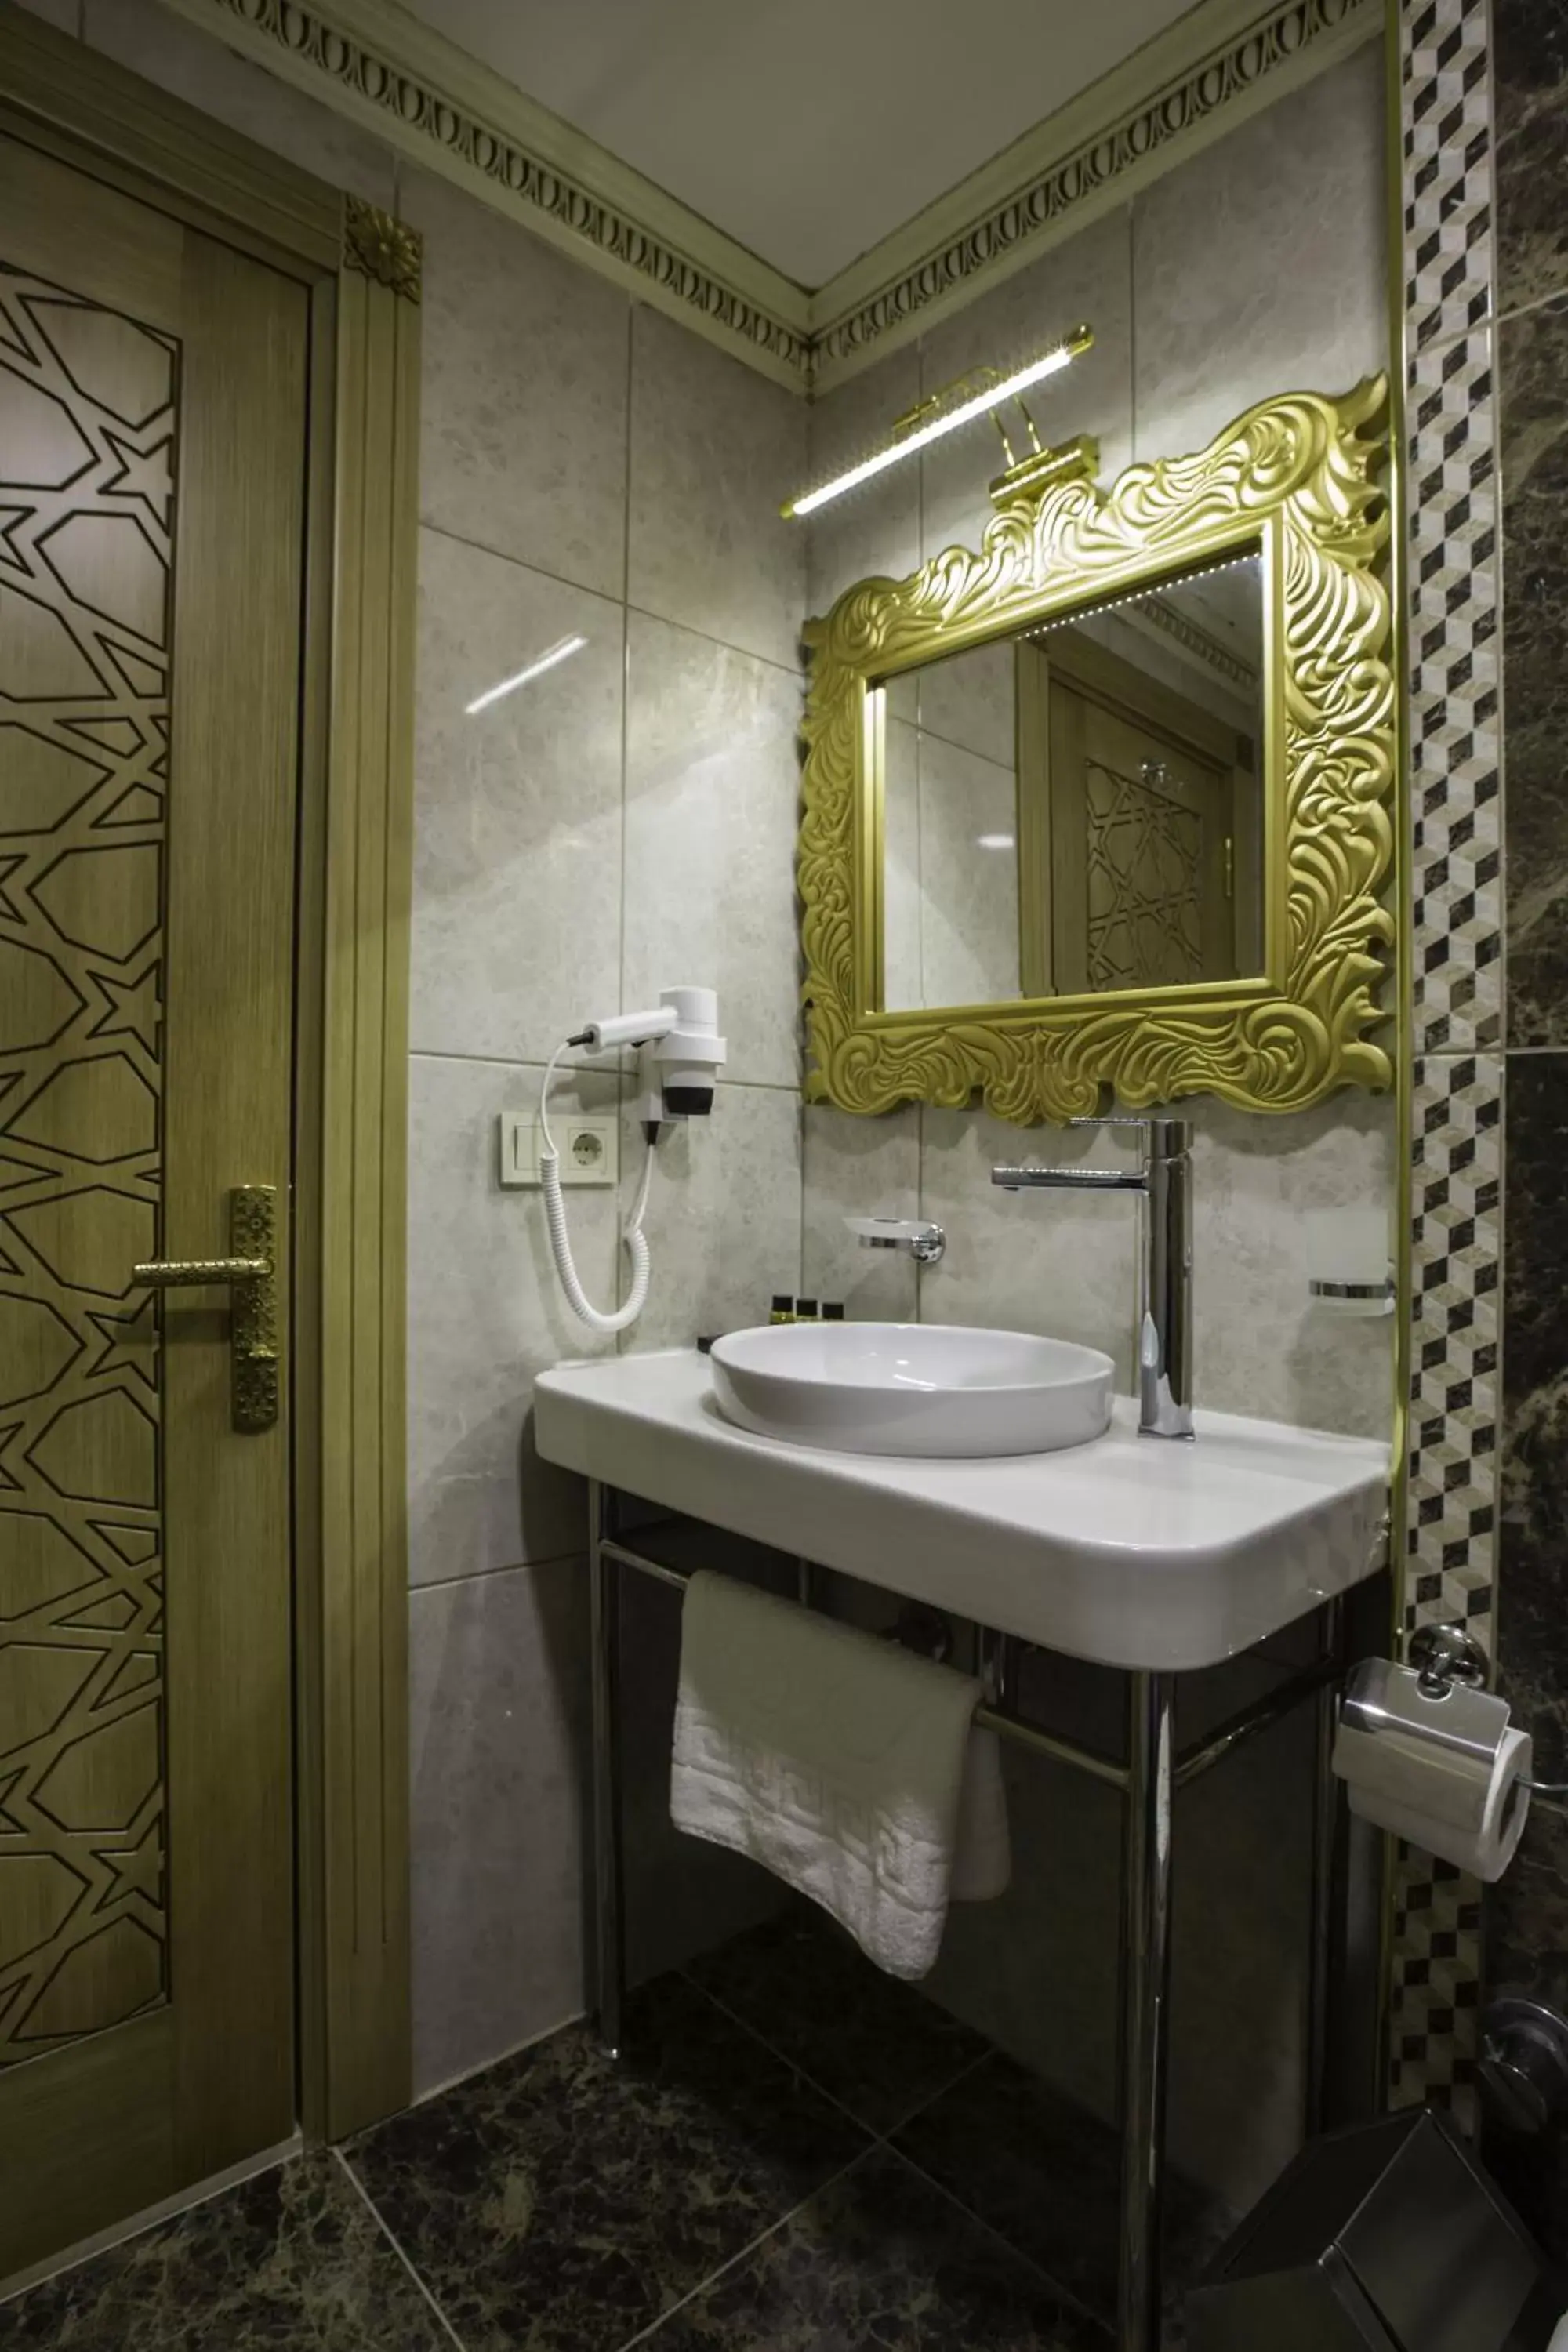 Bathroom in Empire Suite Hotel